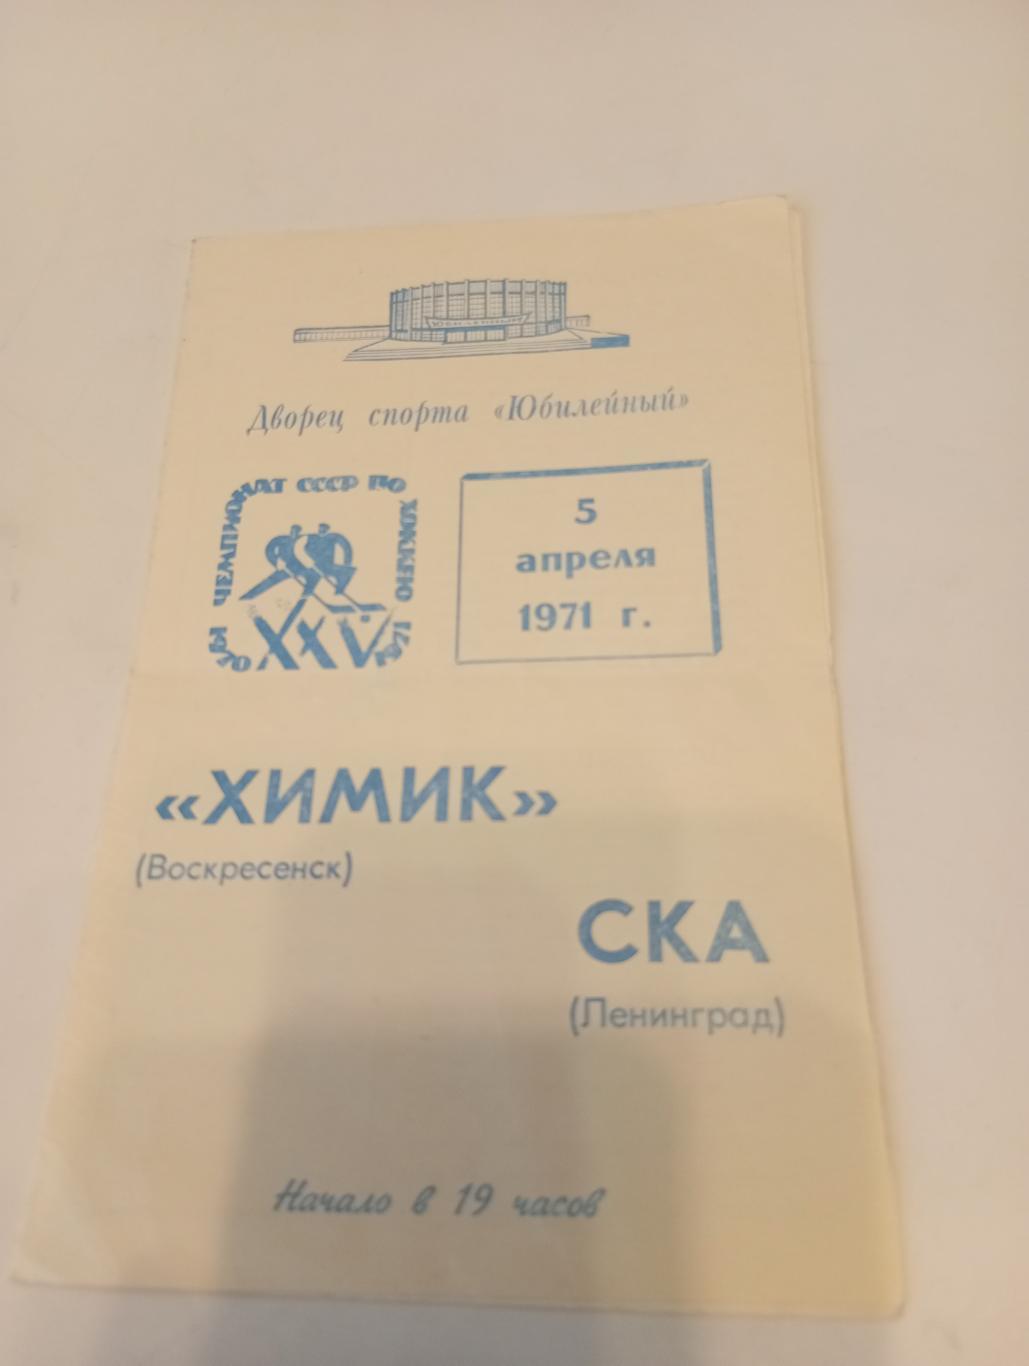 СКА(Ленинград) - Химик( Воскресенск). 5.04.1971.